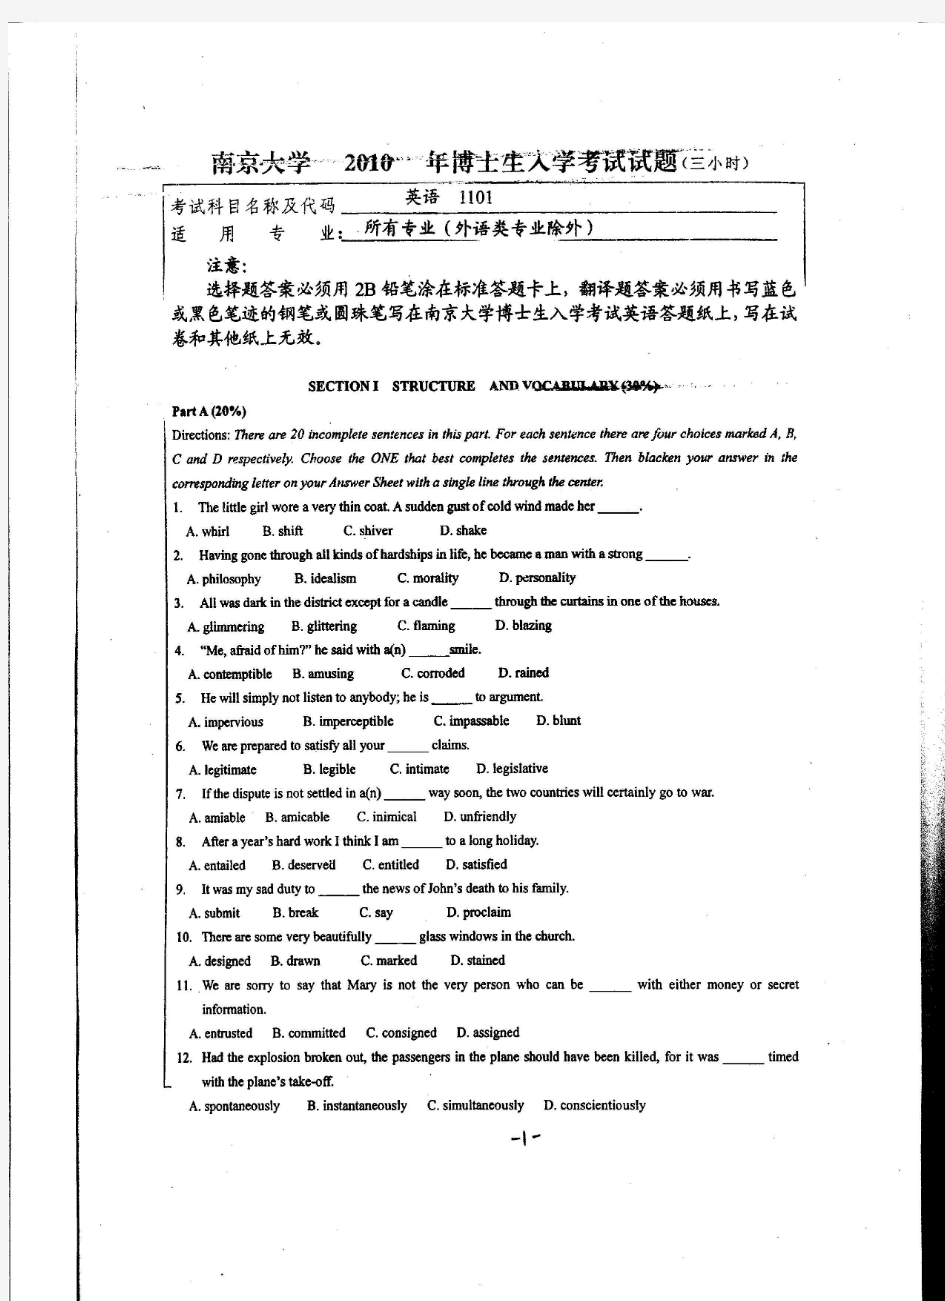 南京大学2010年博士生入学考试试题考试科目：英语